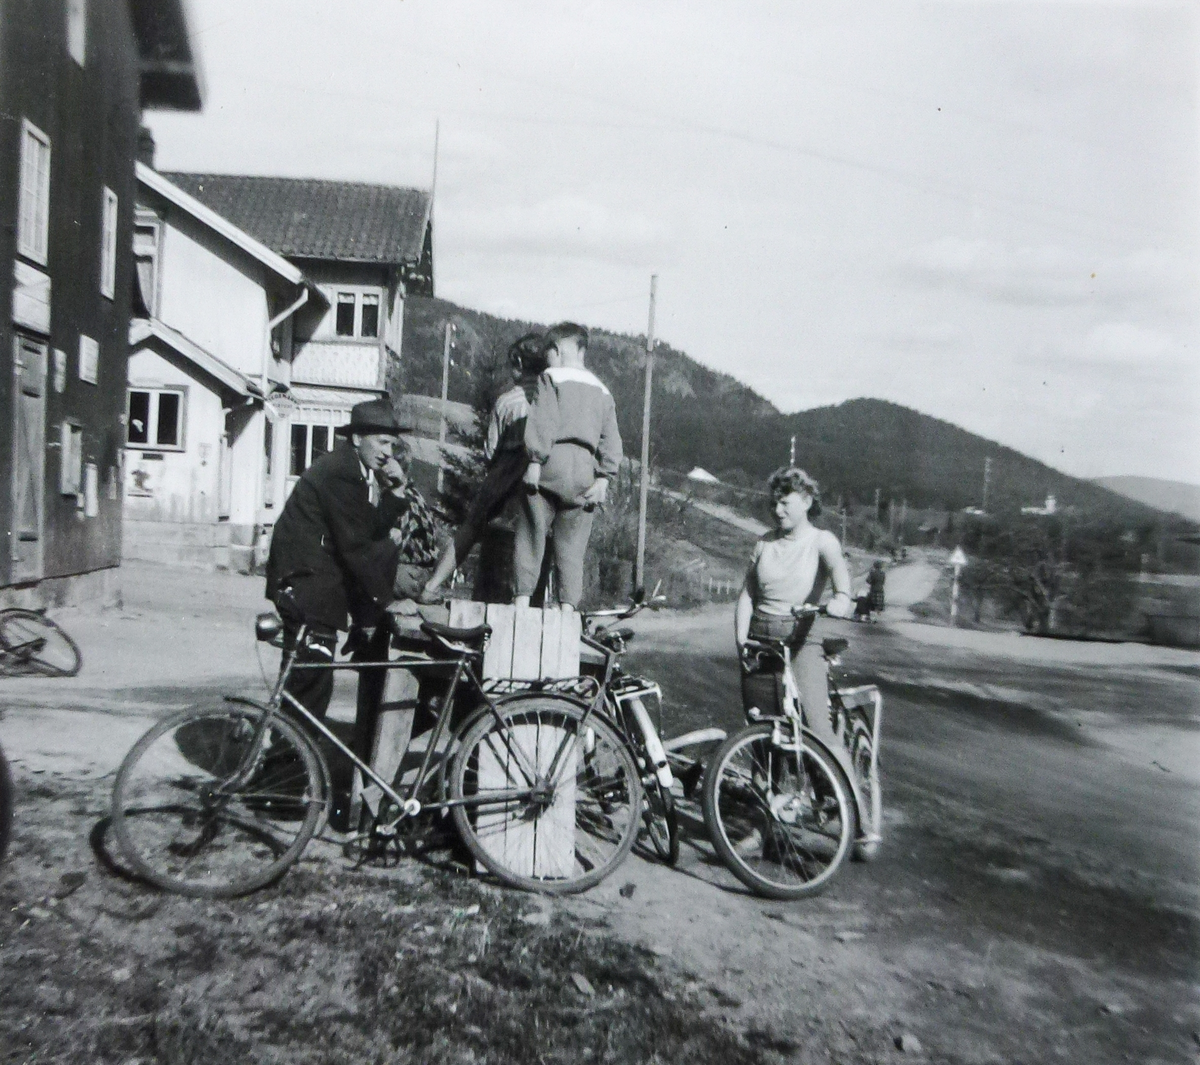 Fra venstre Åge Tidemansen, Dag og Åse Simenstad. 
Med ryggen til Kjell Finnerud.
Bildet tatt siste halvdel av femtitallet.